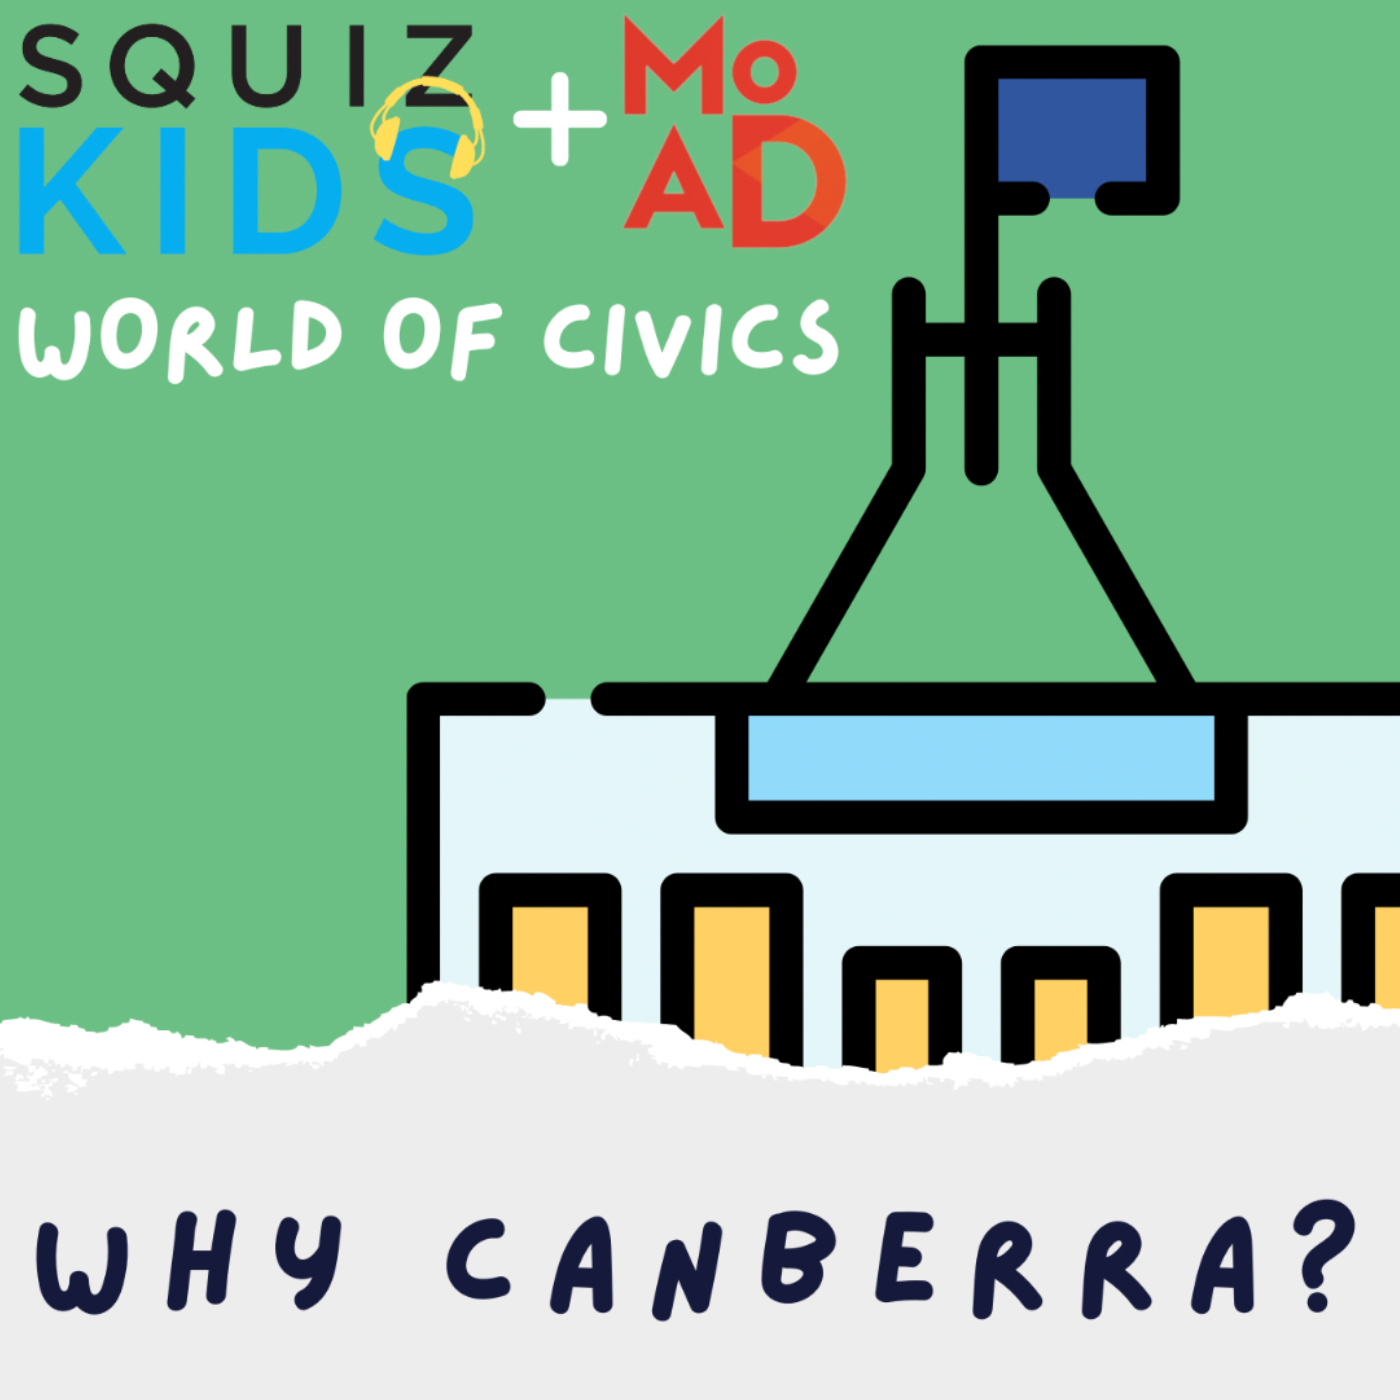 World of Civics 
Squiz Kids